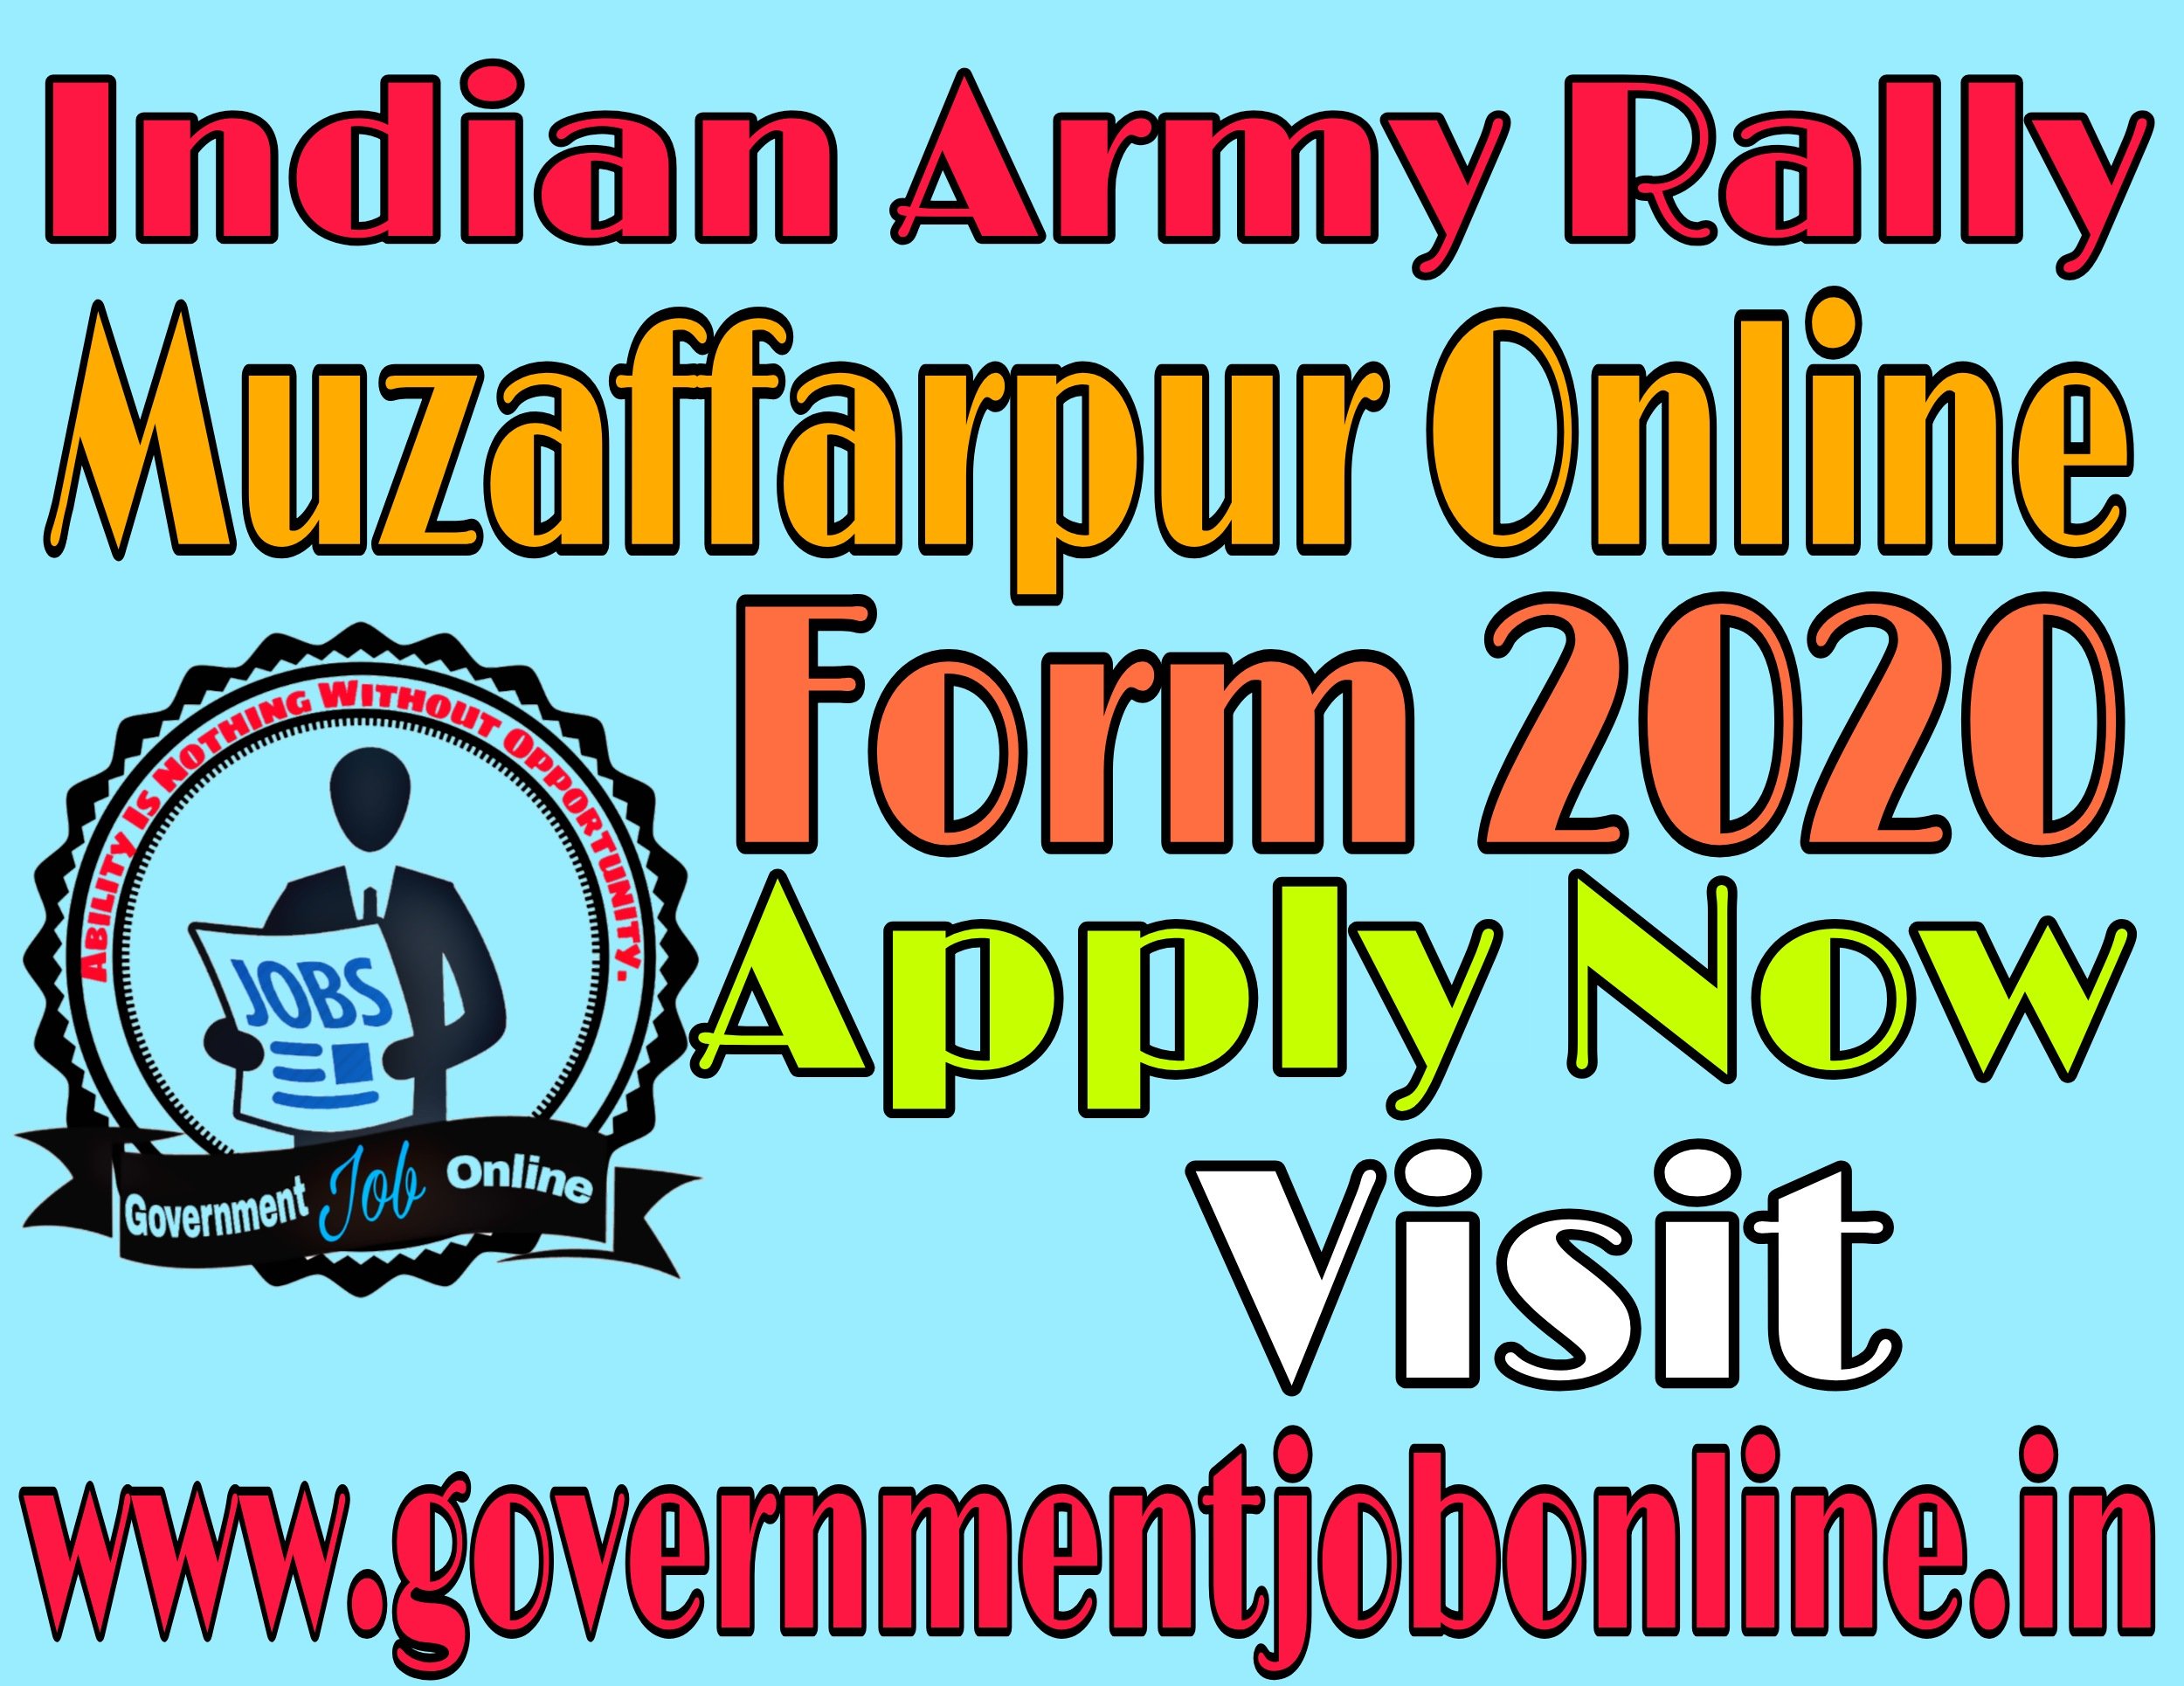 Indian Army Rally Muzaffarpur, Gaya, Kahitar Online Form 2020